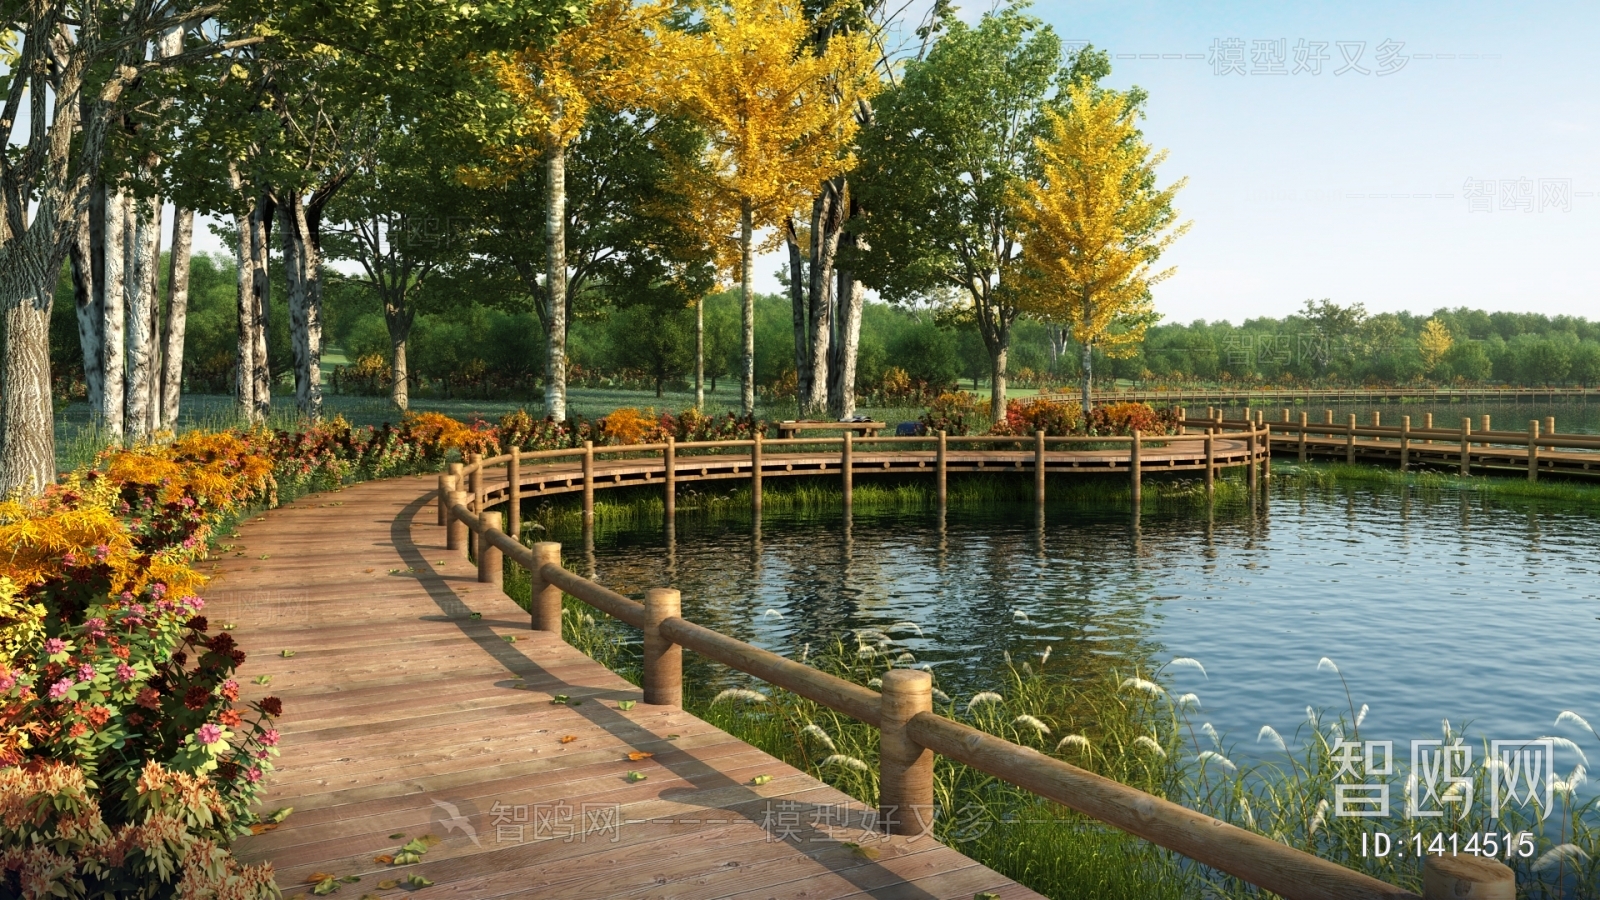 Modern Park Landscape